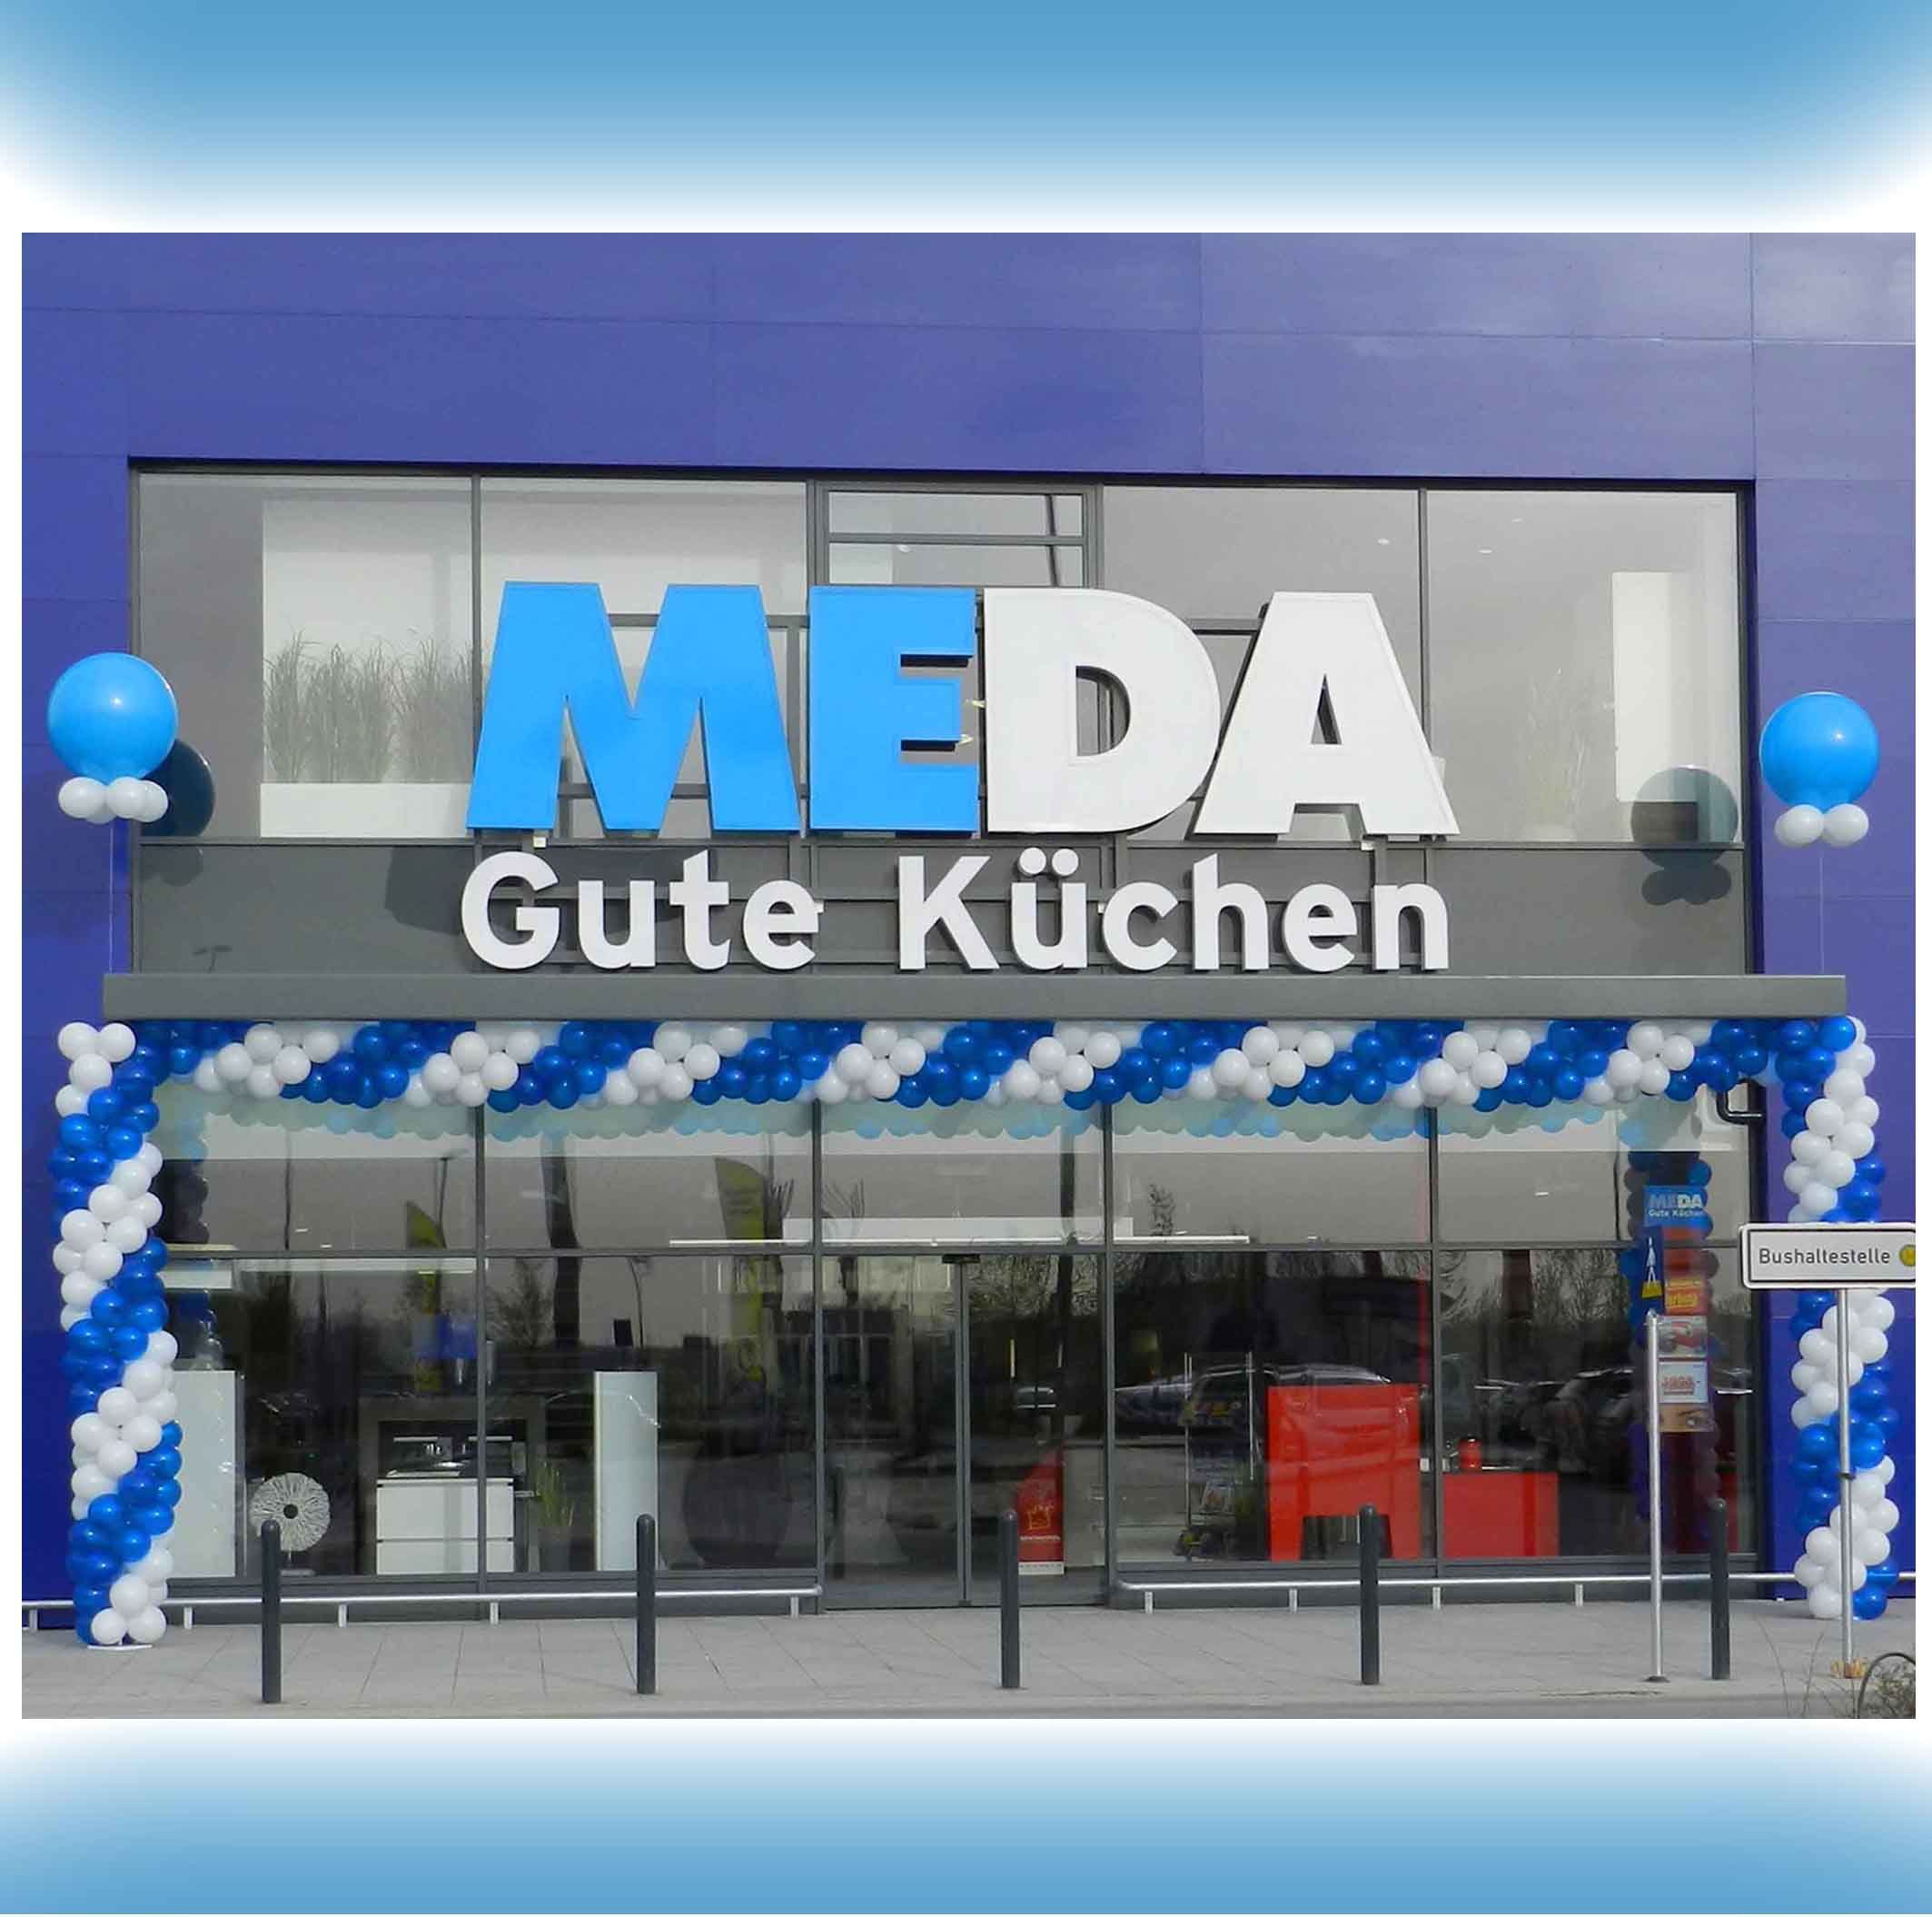 Beeindruckender Torbogen aus blauen und weißen Ballongirlanden zur Eröffnung von MEDA Küchen in Würzburg, schmückt den Eingangsbereich.